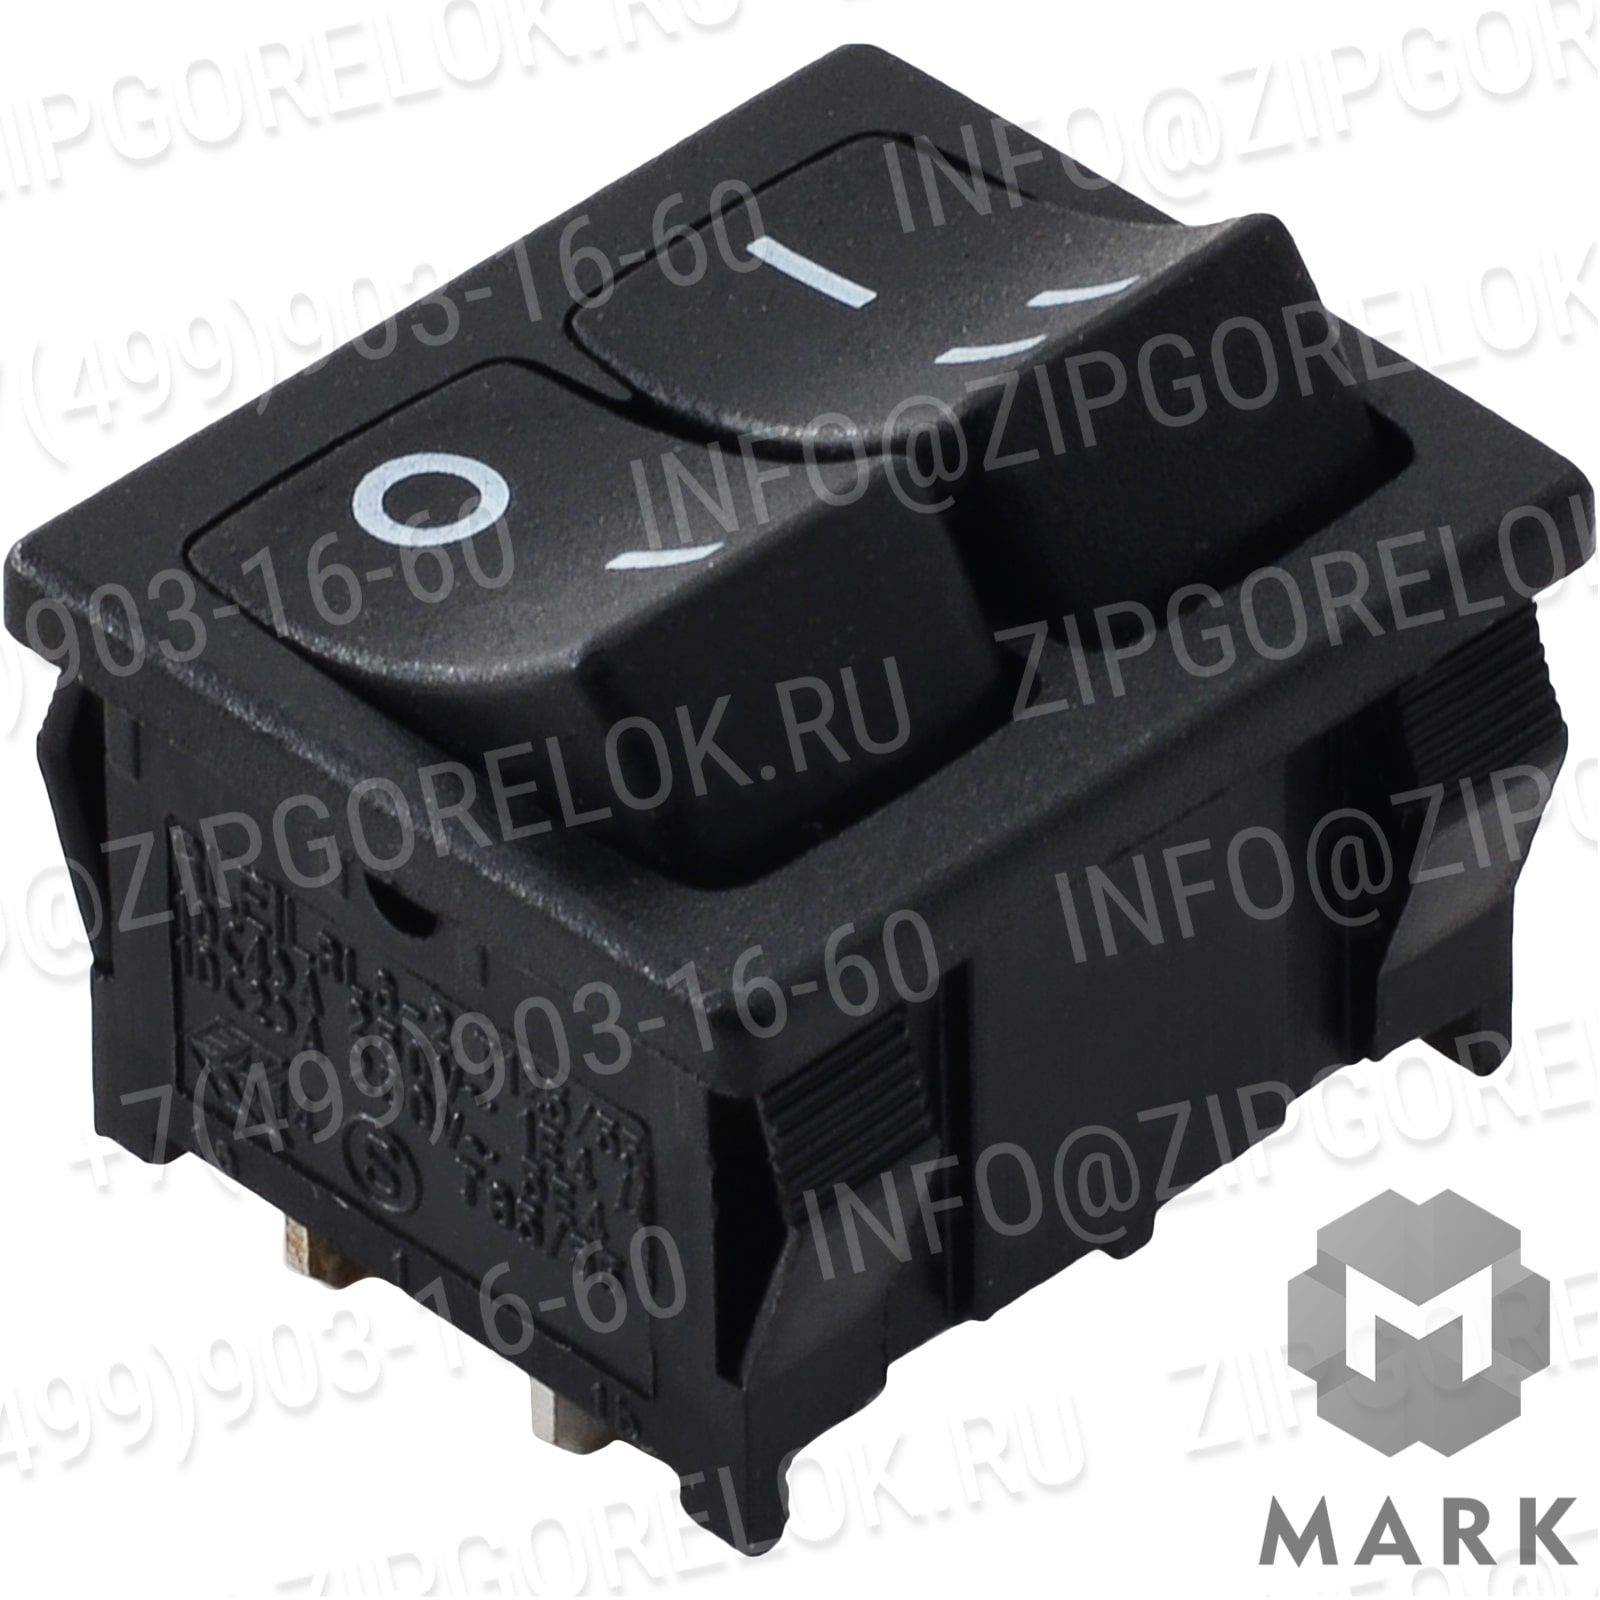 3003770 Купить 3003770 Выключатель T125/55-T125 RIELLO | Zipgorelok.ru